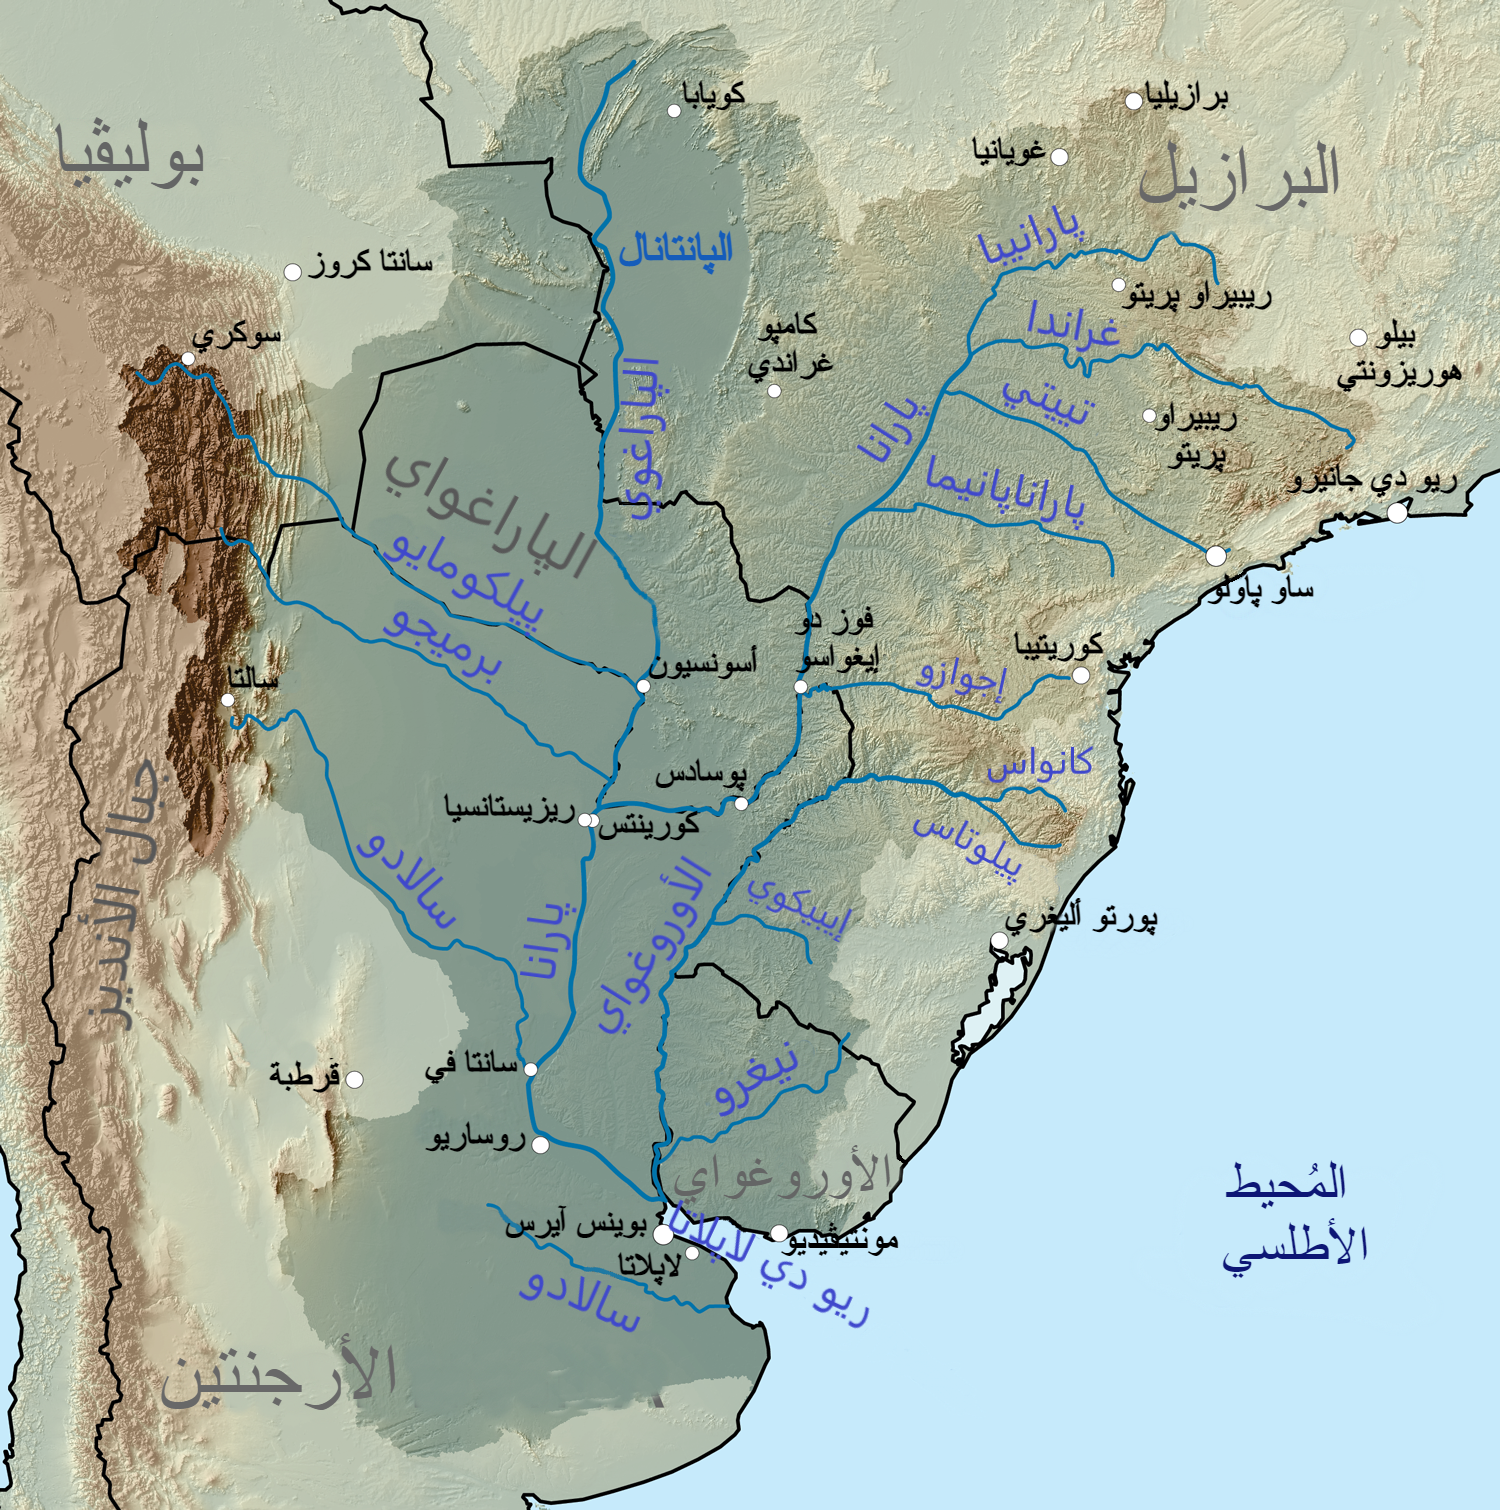 Рио гранде какой океан. Бассейн реки Парана на карте. Бассейн реки Парана. Исток реки Парана в Южной Америке на карте. Река ла-плата на карте Южной Америки.